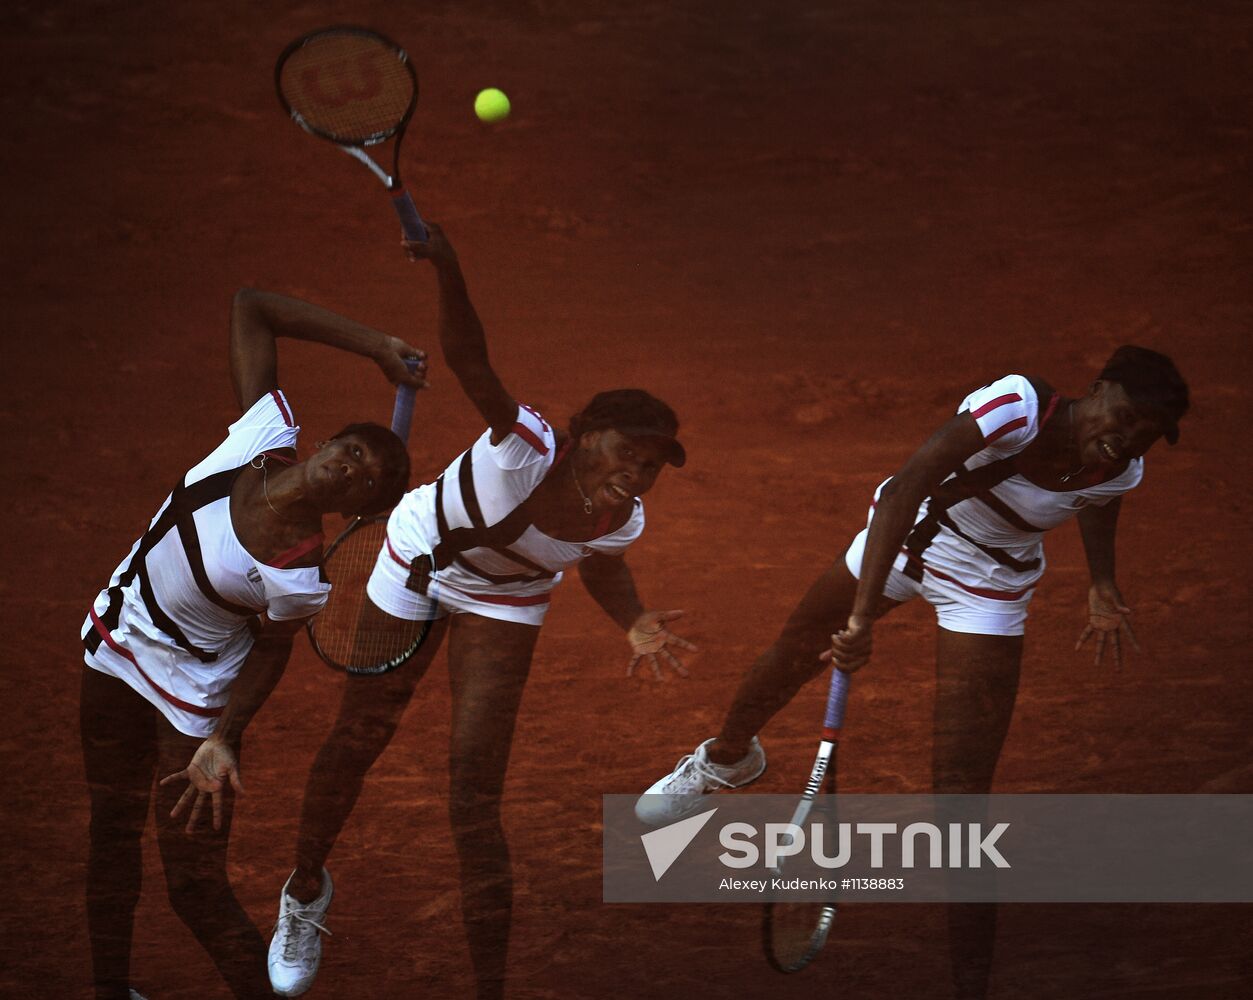 Tennis Roland Garros - 2012. Day 2